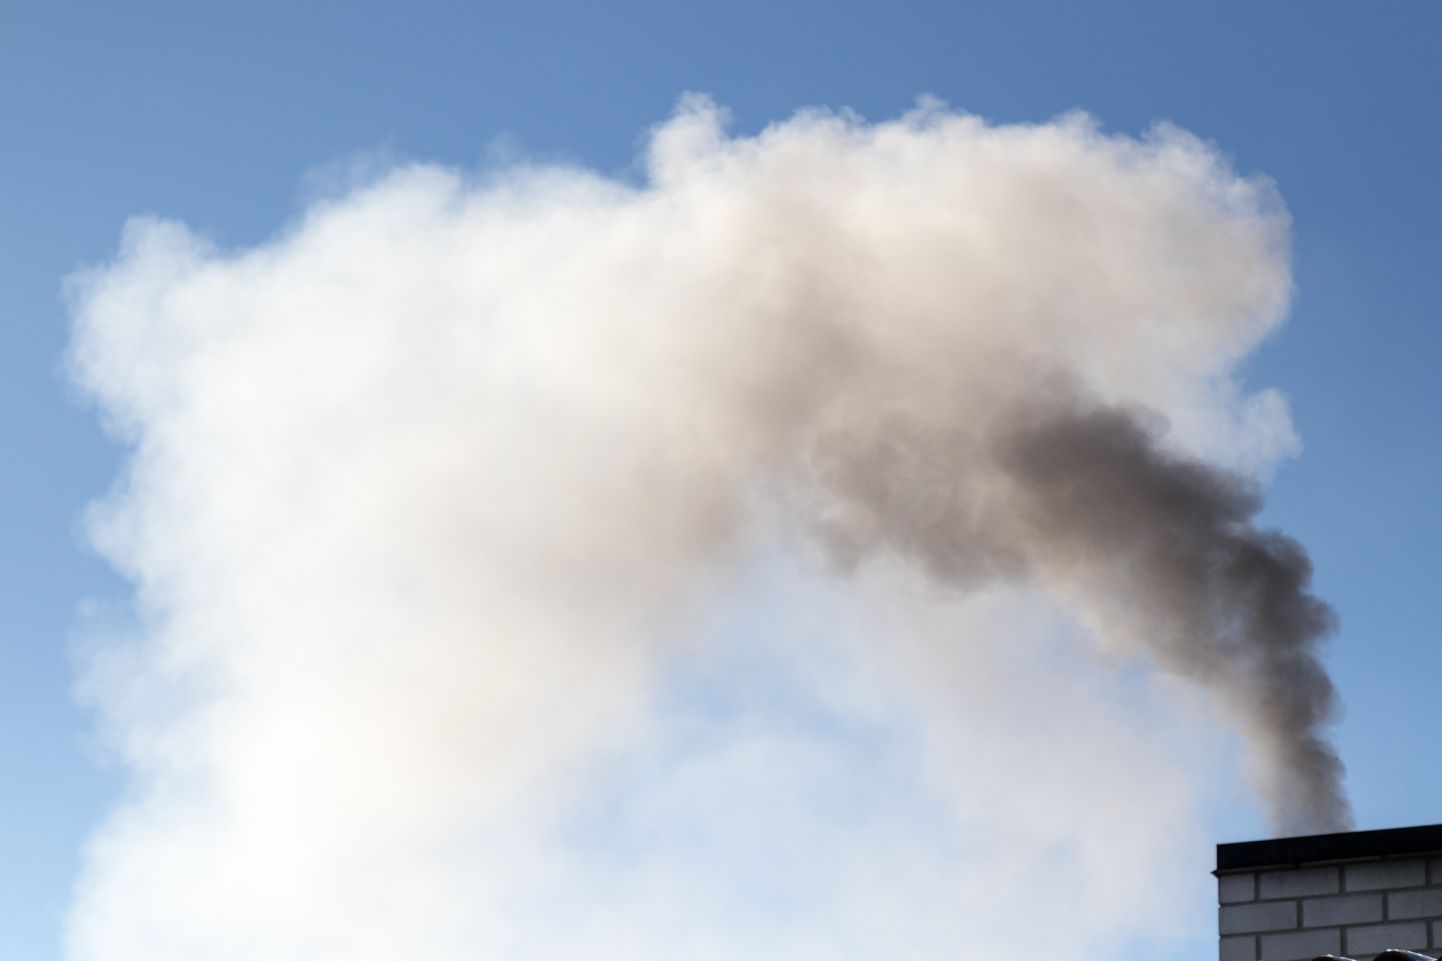 Tartu õhus on tuvastatud kantserogeense ühendi bensopüreeni sisaldus, mis ületab kehtestatud sihtväärtust. Bensopüreeni peamiseks allikaks Tartu õhus on ahiküte.